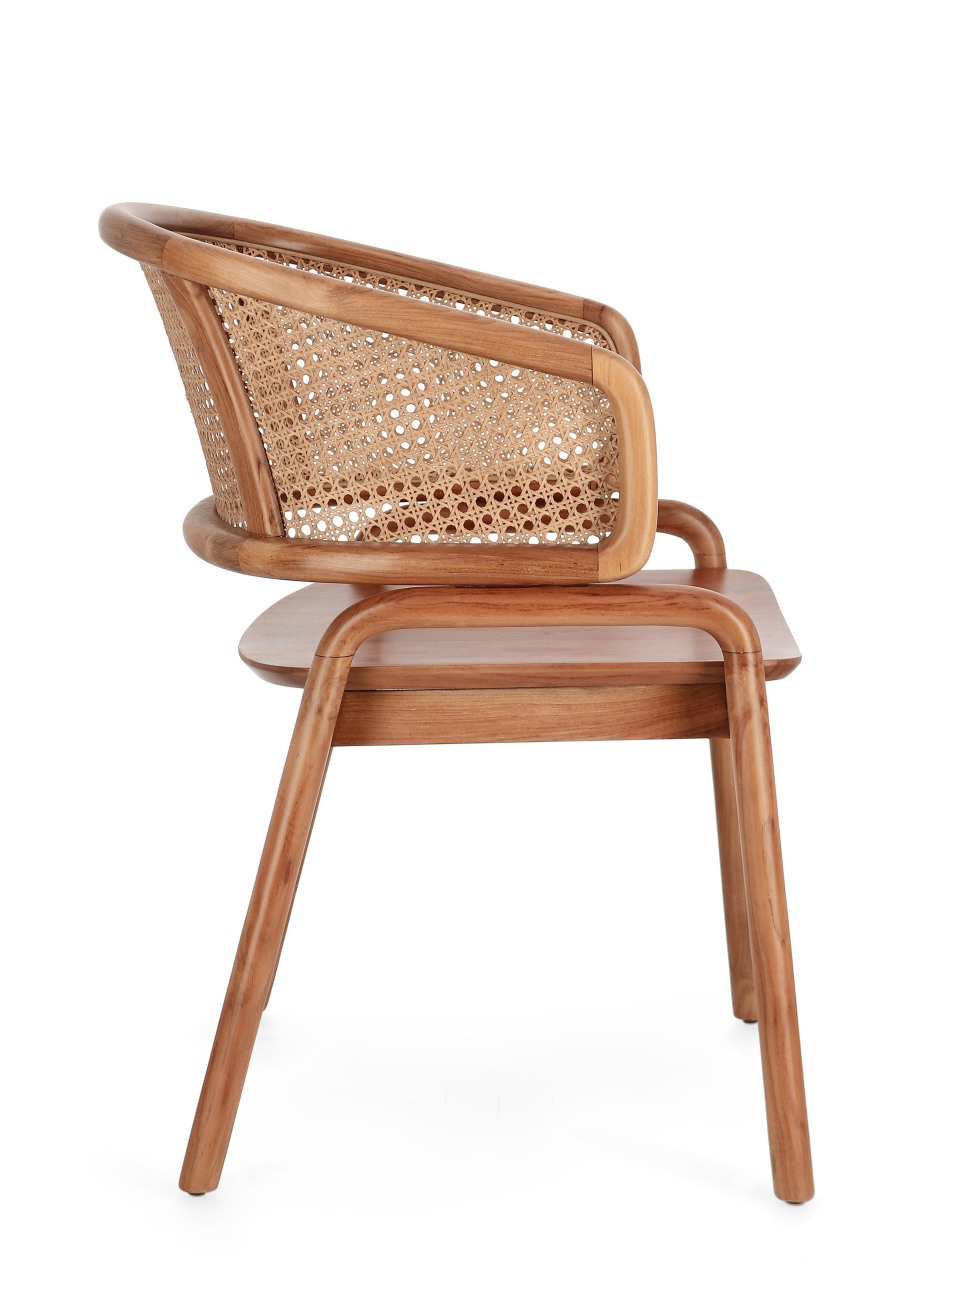 Der Esszimmerstuhl Keith überzeugt mit seinem modernen Stil. Gefertigt wurde er aus Teakholz, welcher einen natürlichen Farbton besitzt. Die Rückenlehne ist aus Rattan und hat eine natürliche Farbe. Der Stuhl besitzt eine Sitzhöhe von 44 cm.